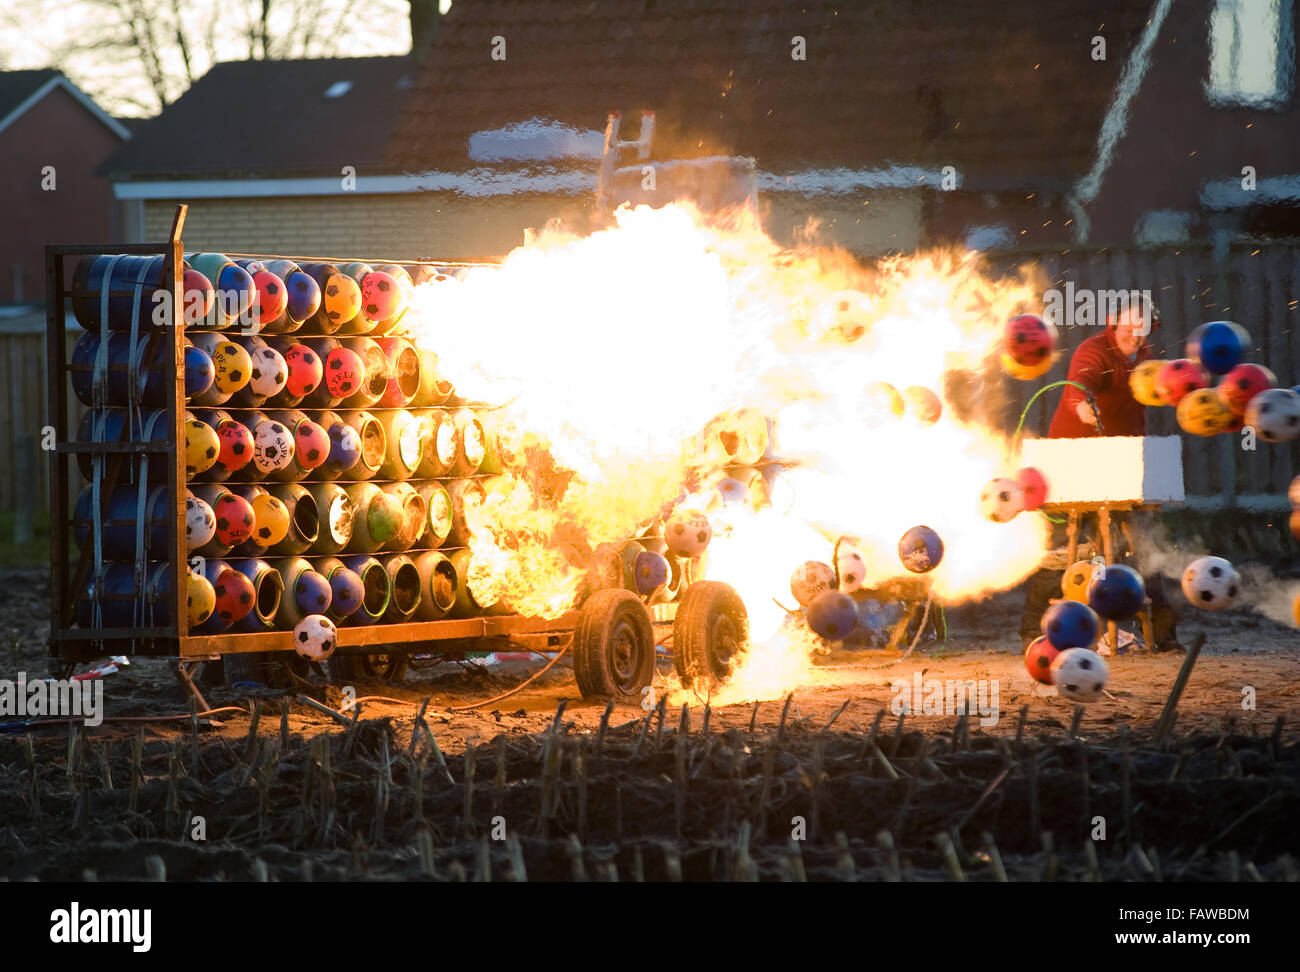 ENSCHEDE, Pays-Bas - 31 déc 2015 : explosion de carbure est une tradition pour le nouvel an aux Pays-Bas et en Belgique. Banque D'Images